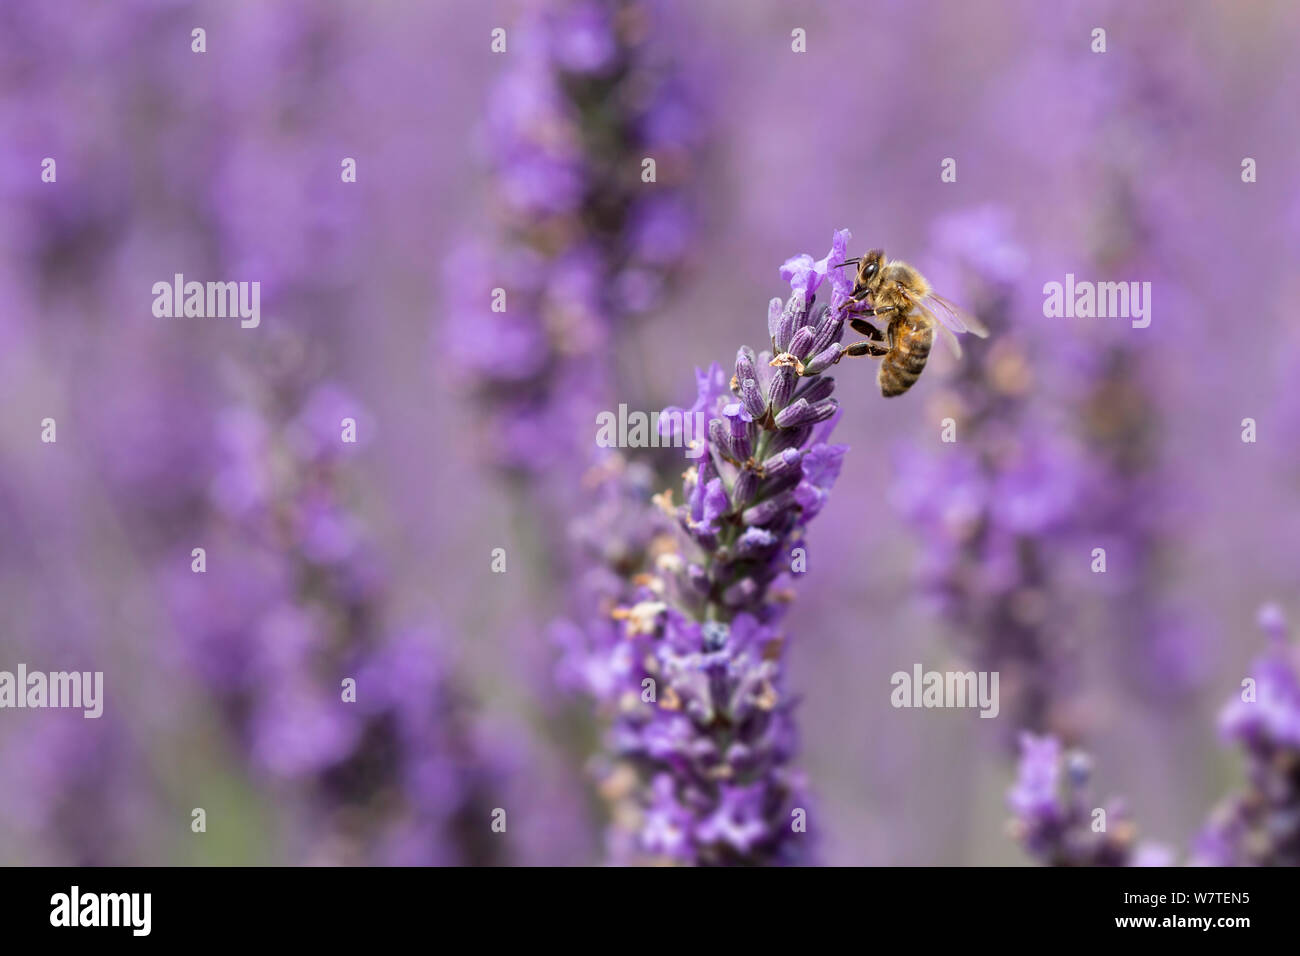 Close up di un miele delle api, Apis mellifera, sui fiori di lavanda Foto Stock